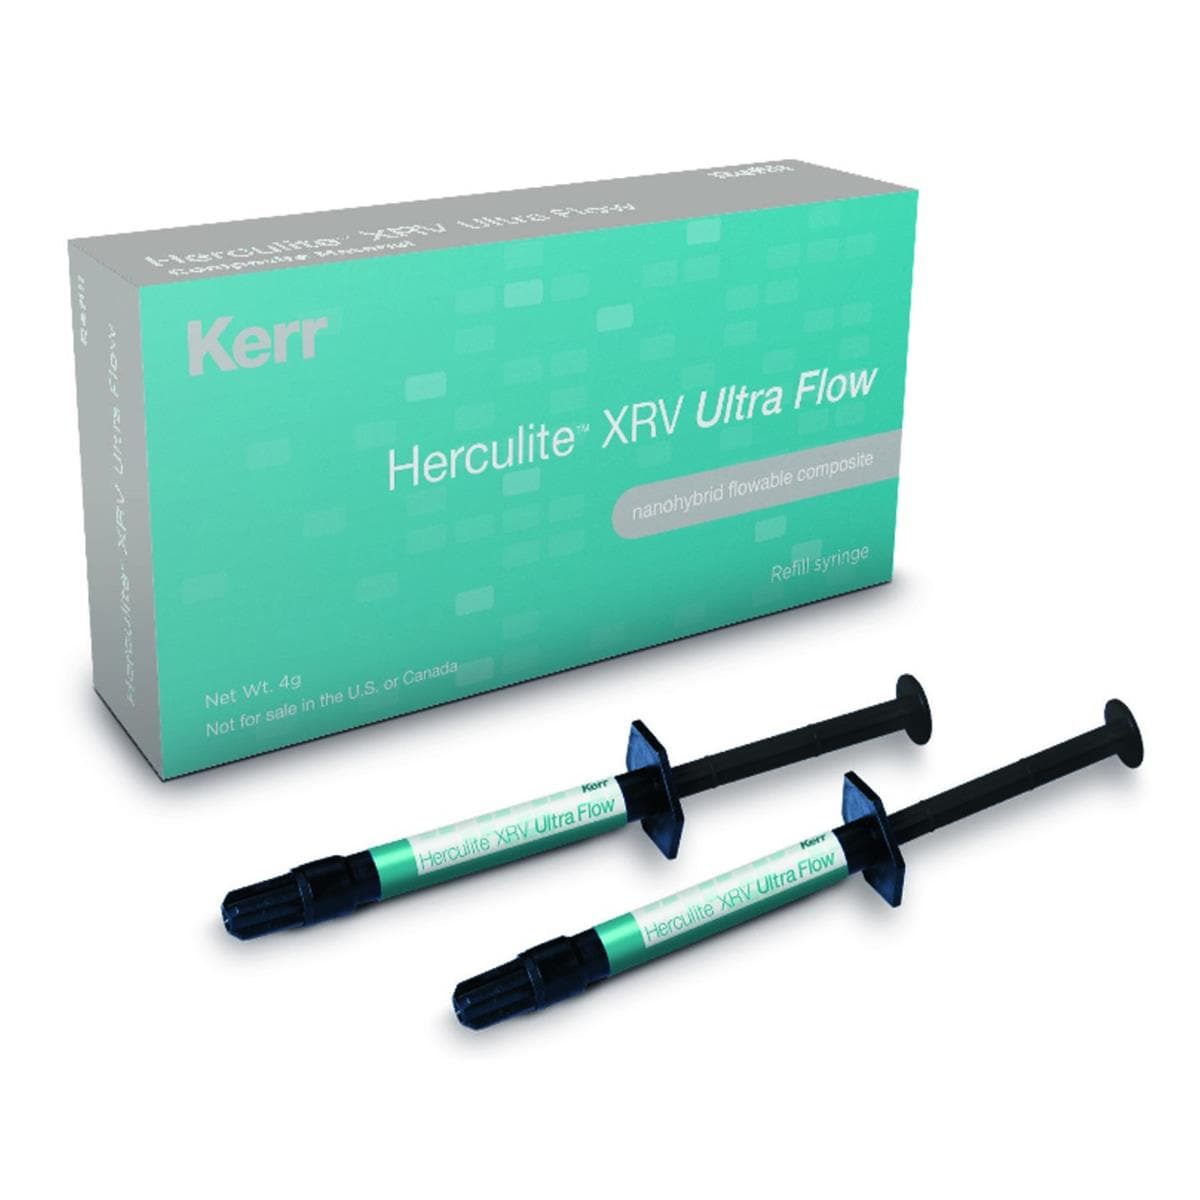 Herculite XRV Ultra Flow KERR - A2 - Seringue de 2g - Bote de 2